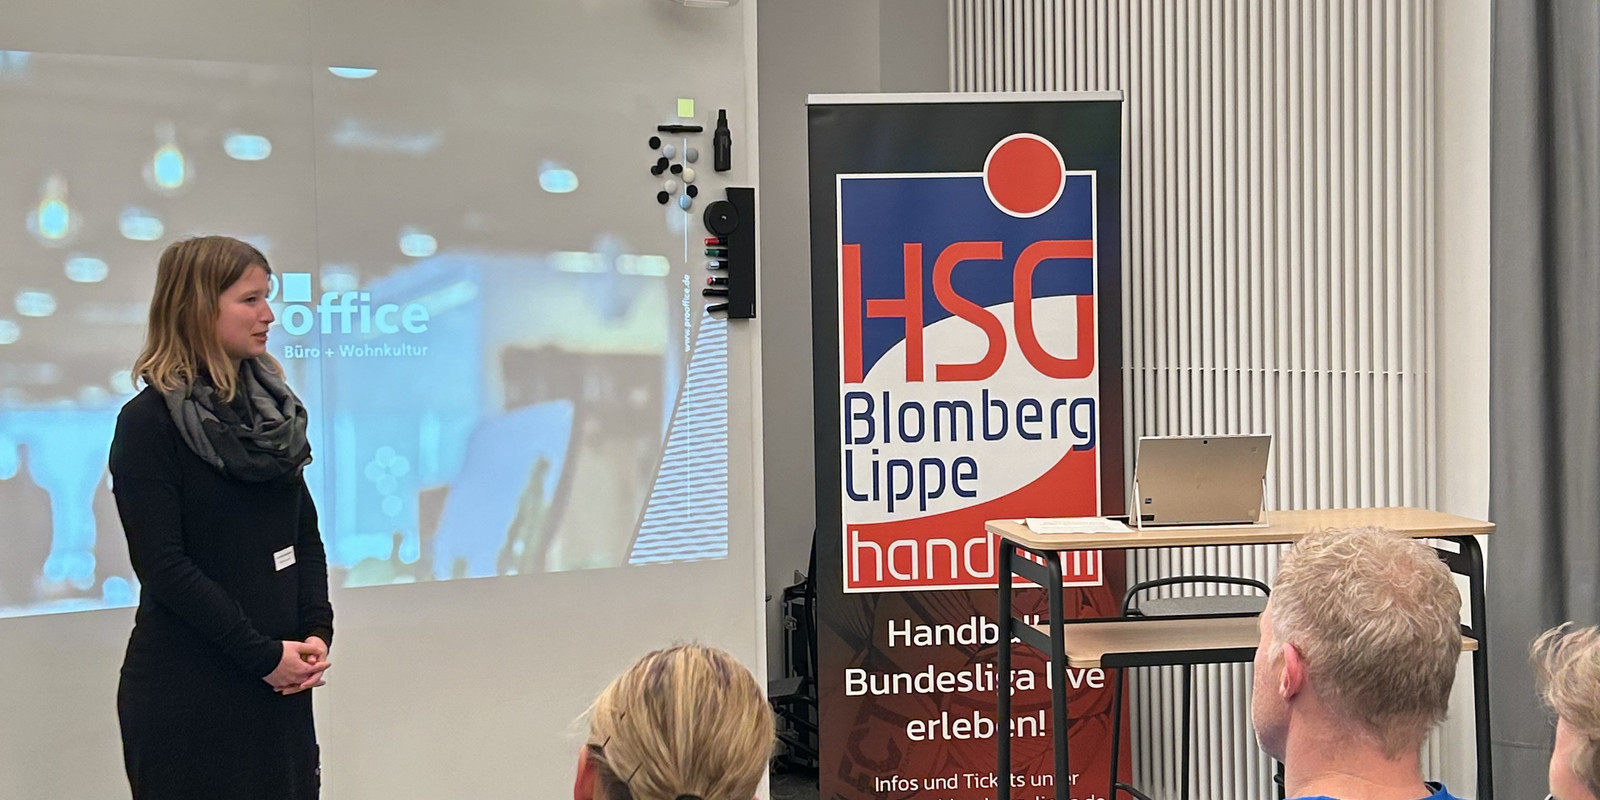 Ein Abend voller Partnerschaft und Innovation: Die HSG Blomberg-Lippe zu Gast bei pro office Bild 30